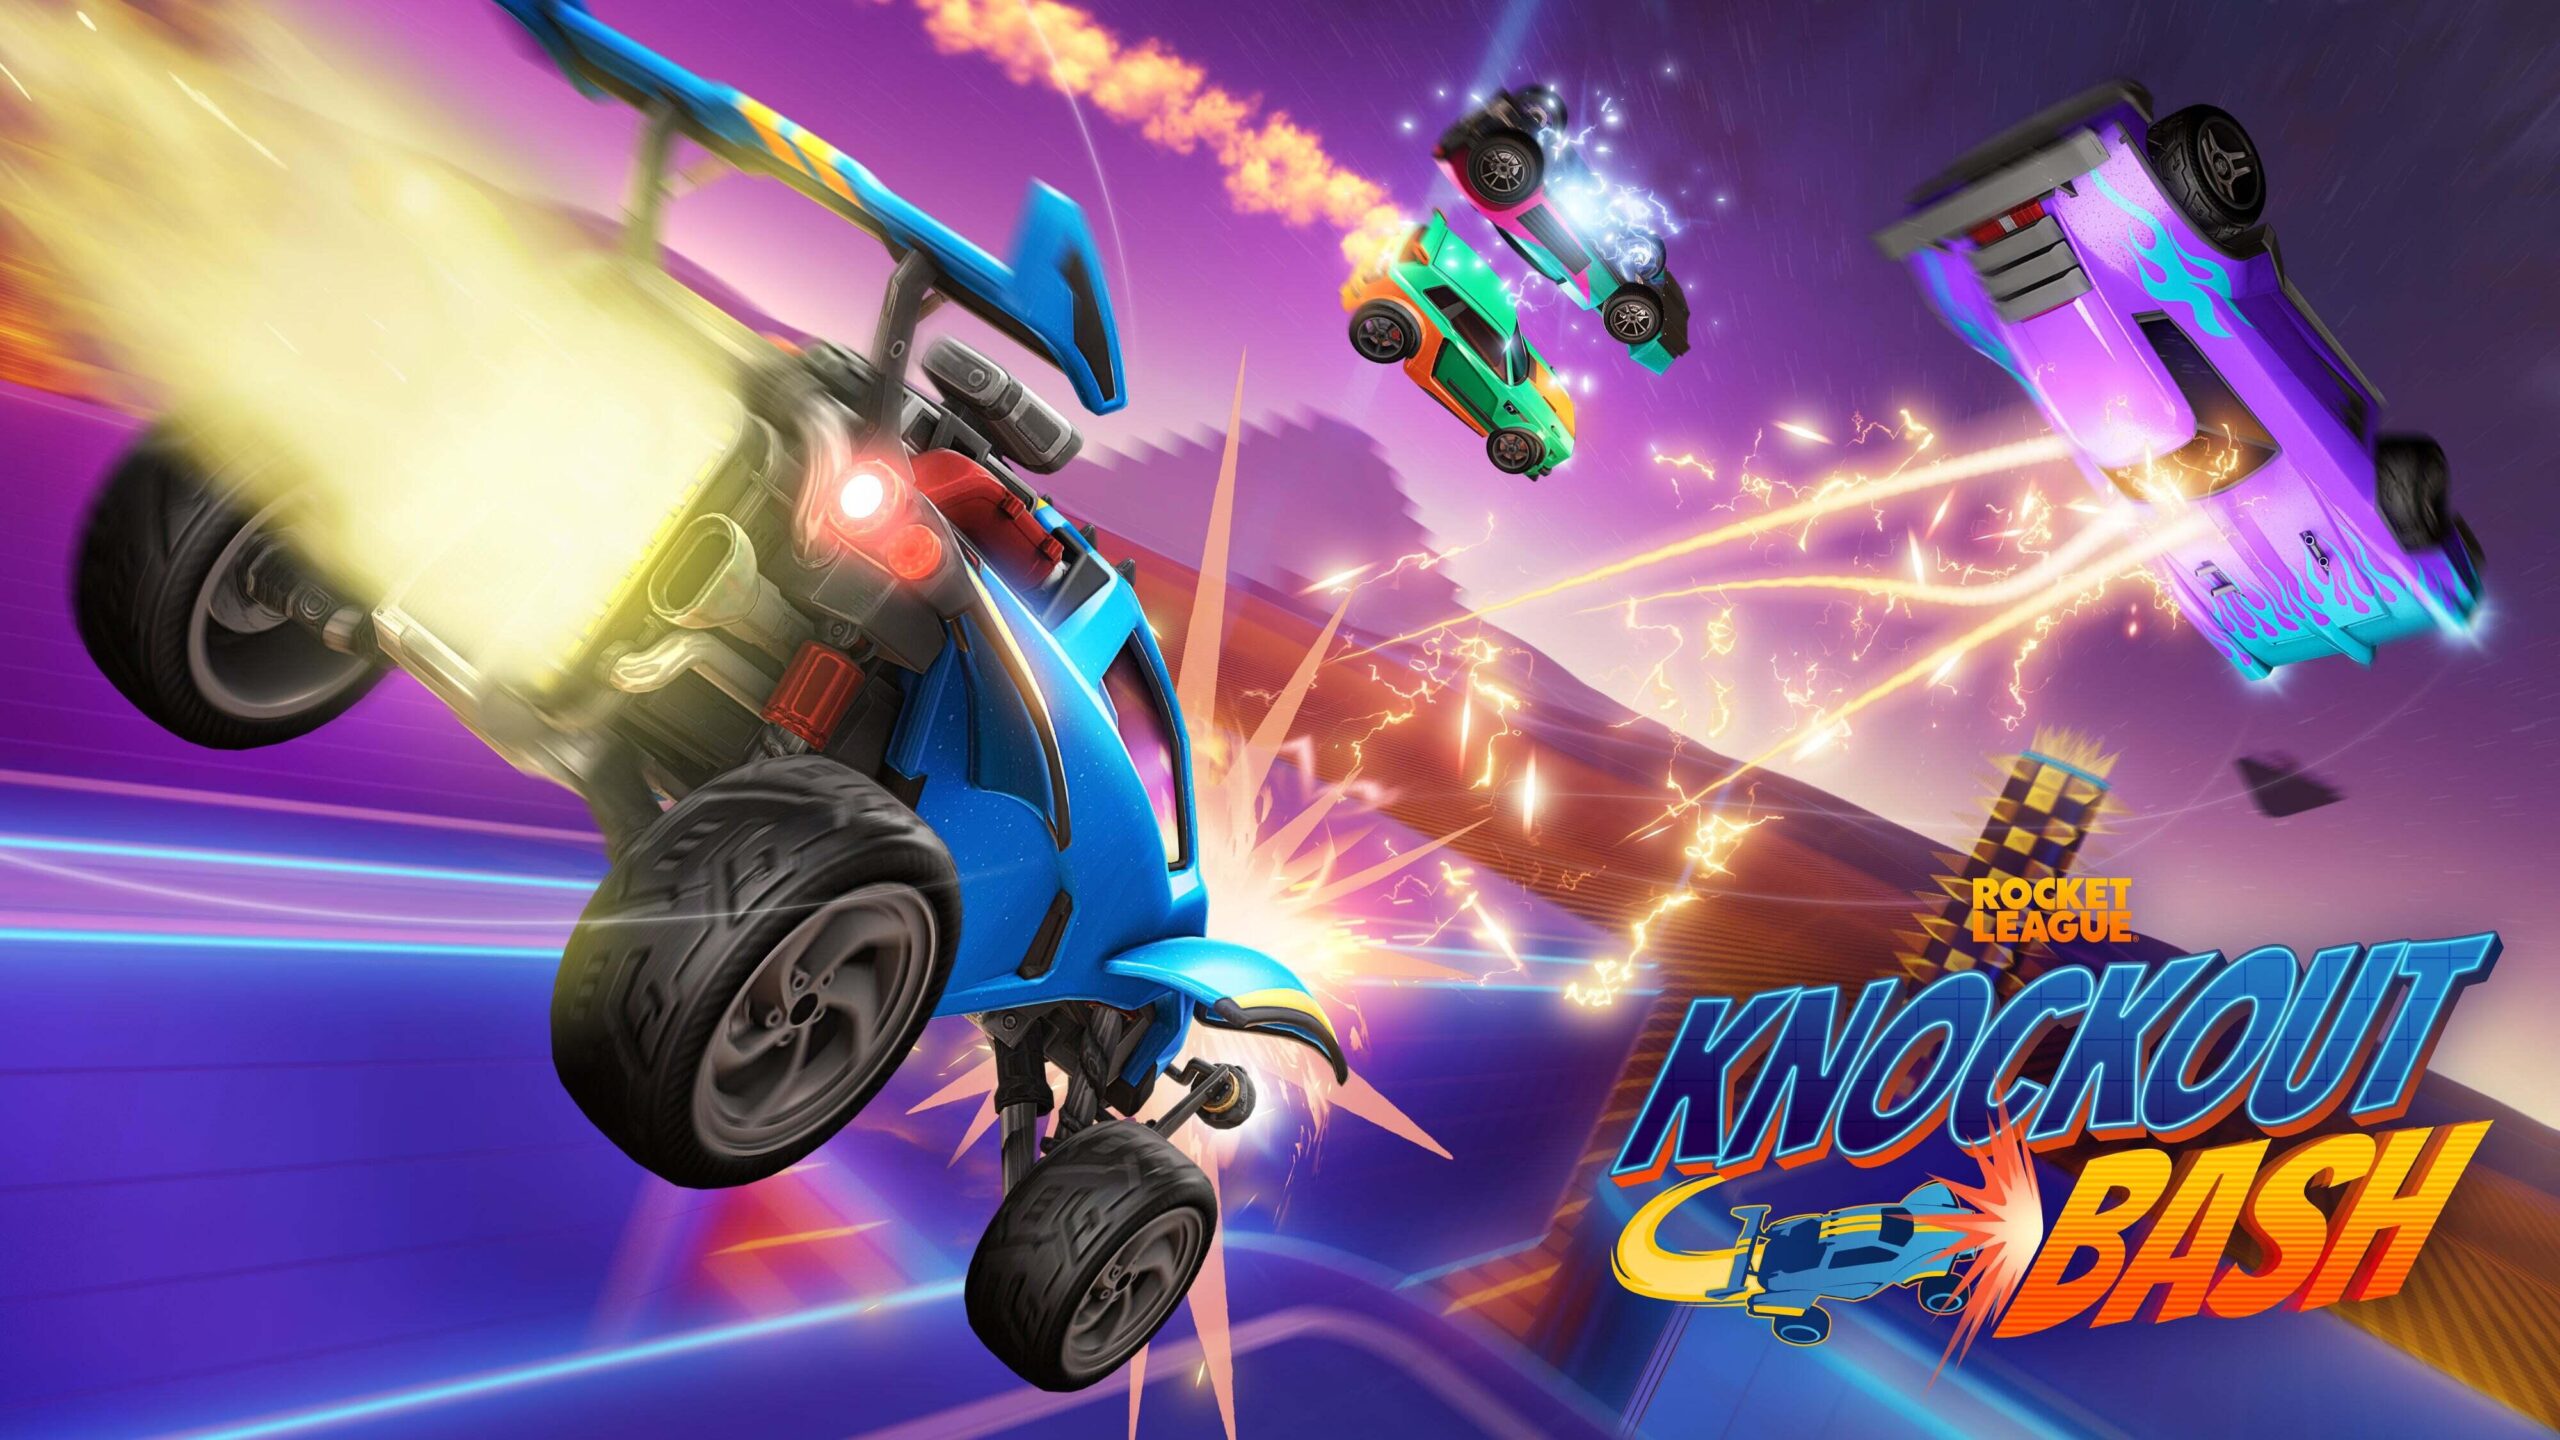 Rocket League x Filme Carros – Colaboração leva chassi de personagem  animado ao jogo nesta semana